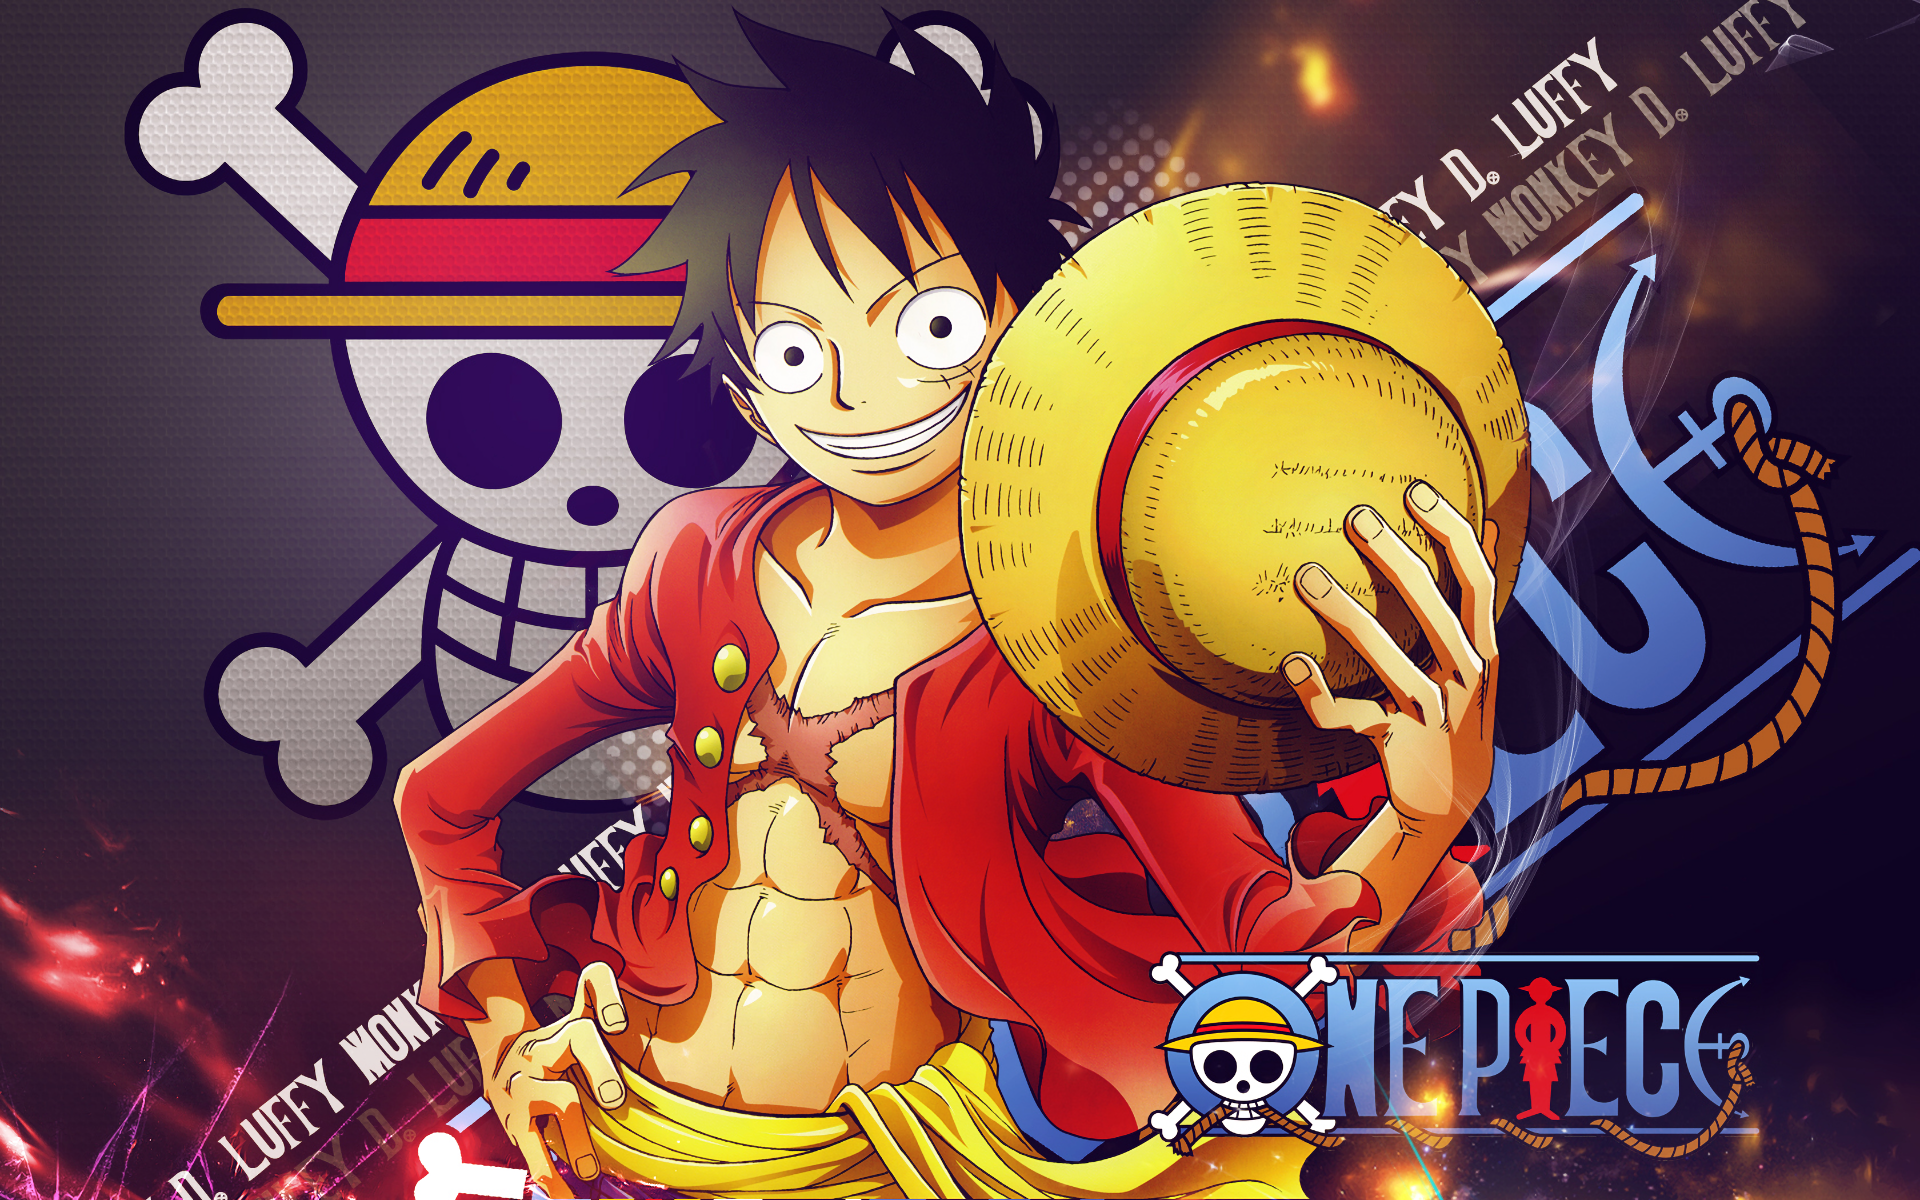 Anime One Piece - đang làm mưa làm gió trên khắp thế giới với những tình tiết hấp dẫn và những nhân vật đầy sức sống. Không truyền thông nào có thể tường thuật lại hết tất cả những điều thú vị trong One Piece. Bấm vào hình ảnh để khám phá thế giới đầy màu sắc của anime One Piece!